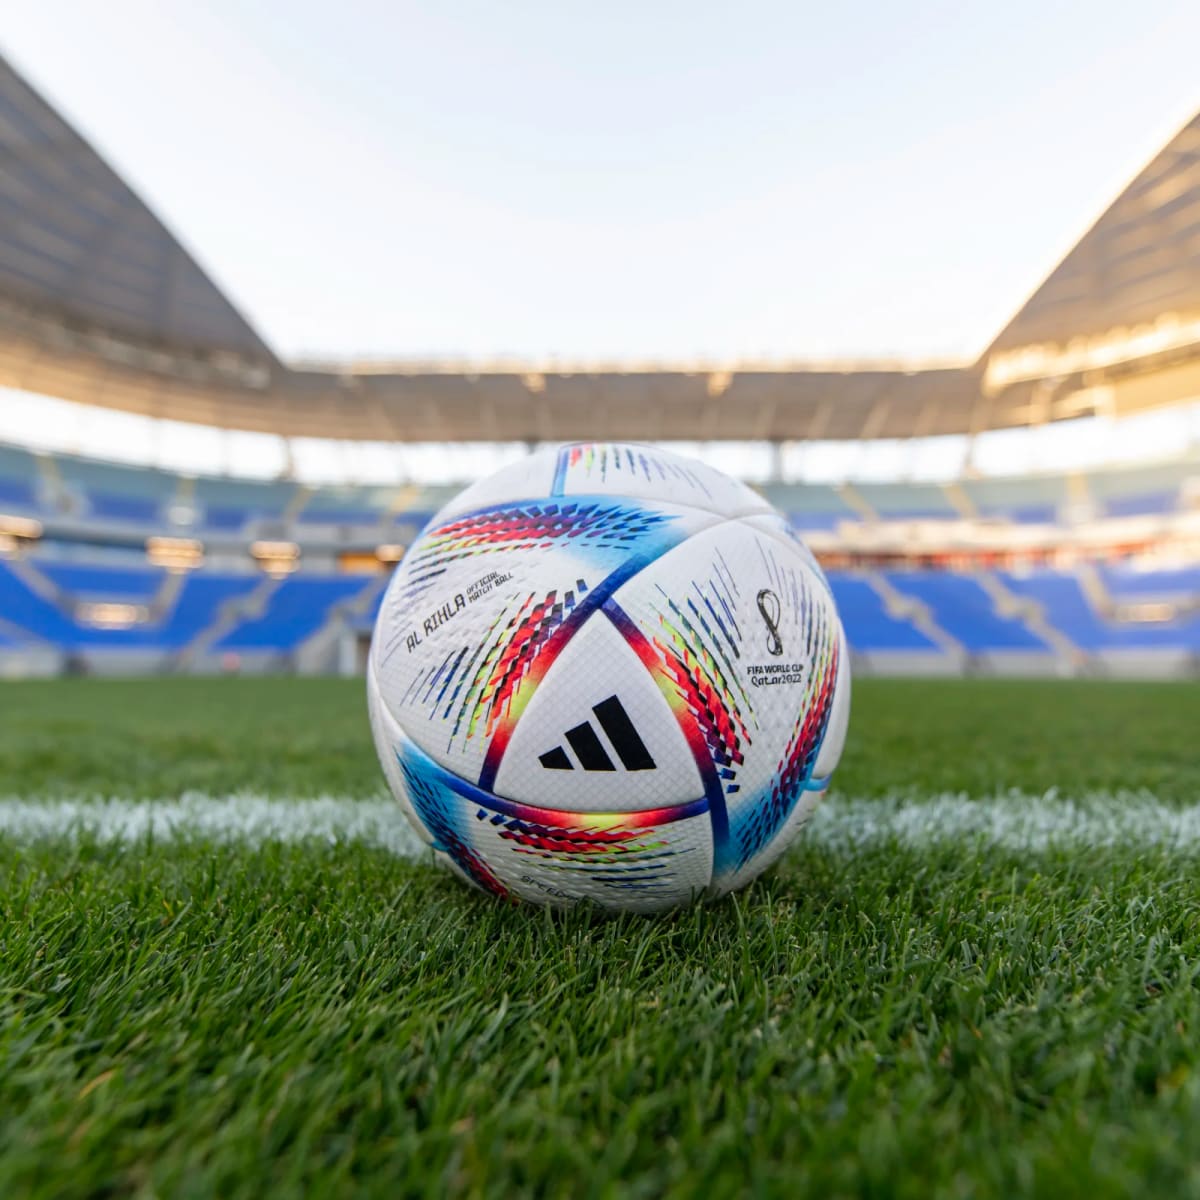 Al Rihla FIFA World Cup Qatar 2022 ball unveiled by adidas on FanNation